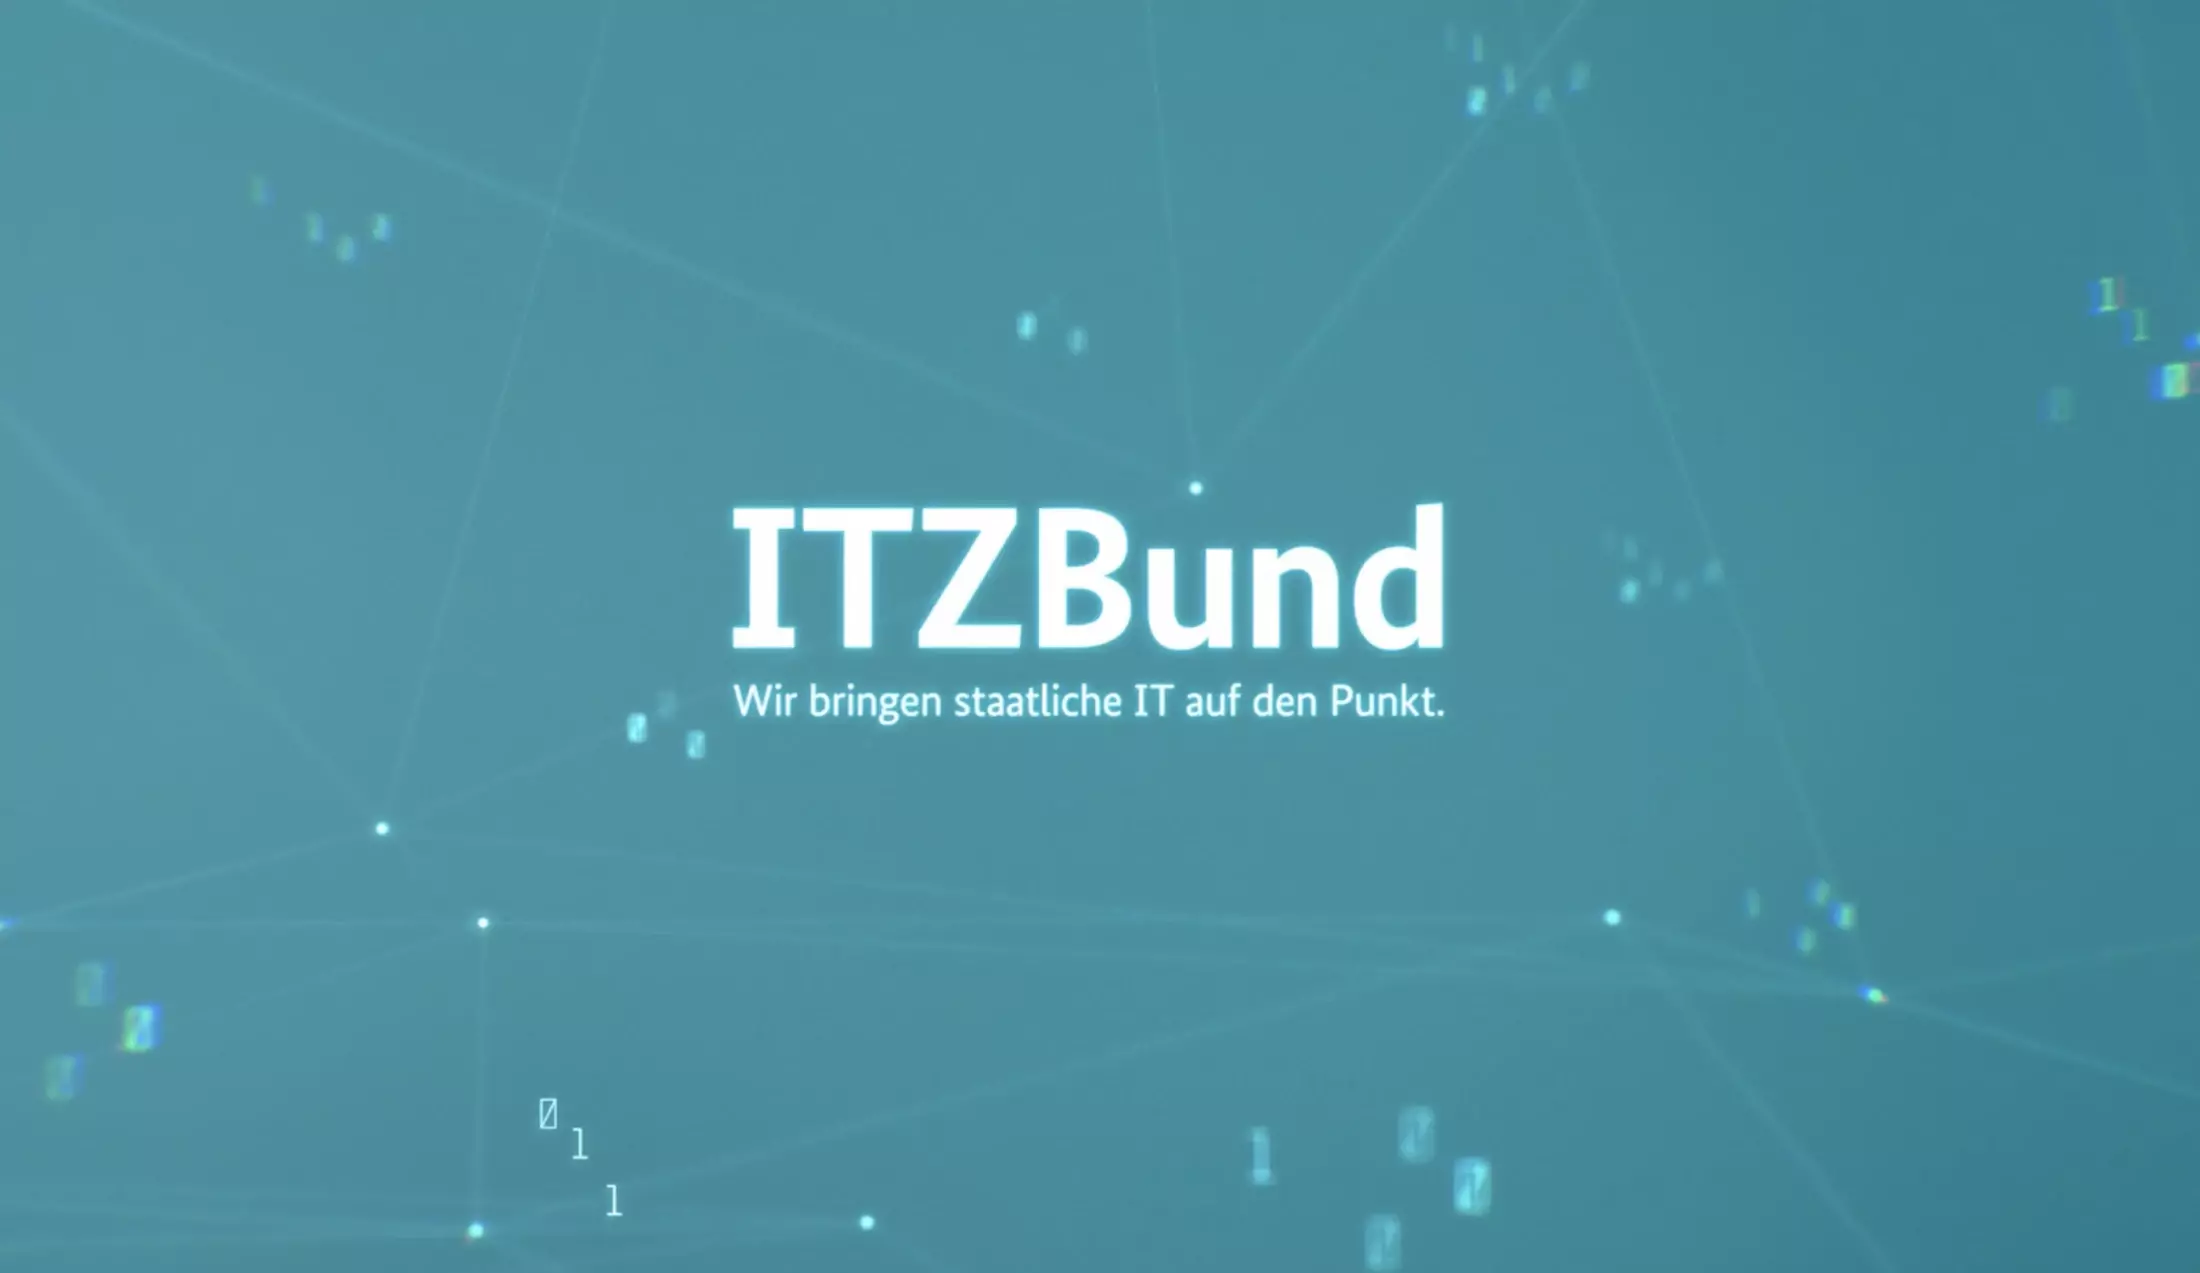 Vorschaubild des Videos: Grüner Hintergrund mit dem Logo des ITZBund darauf